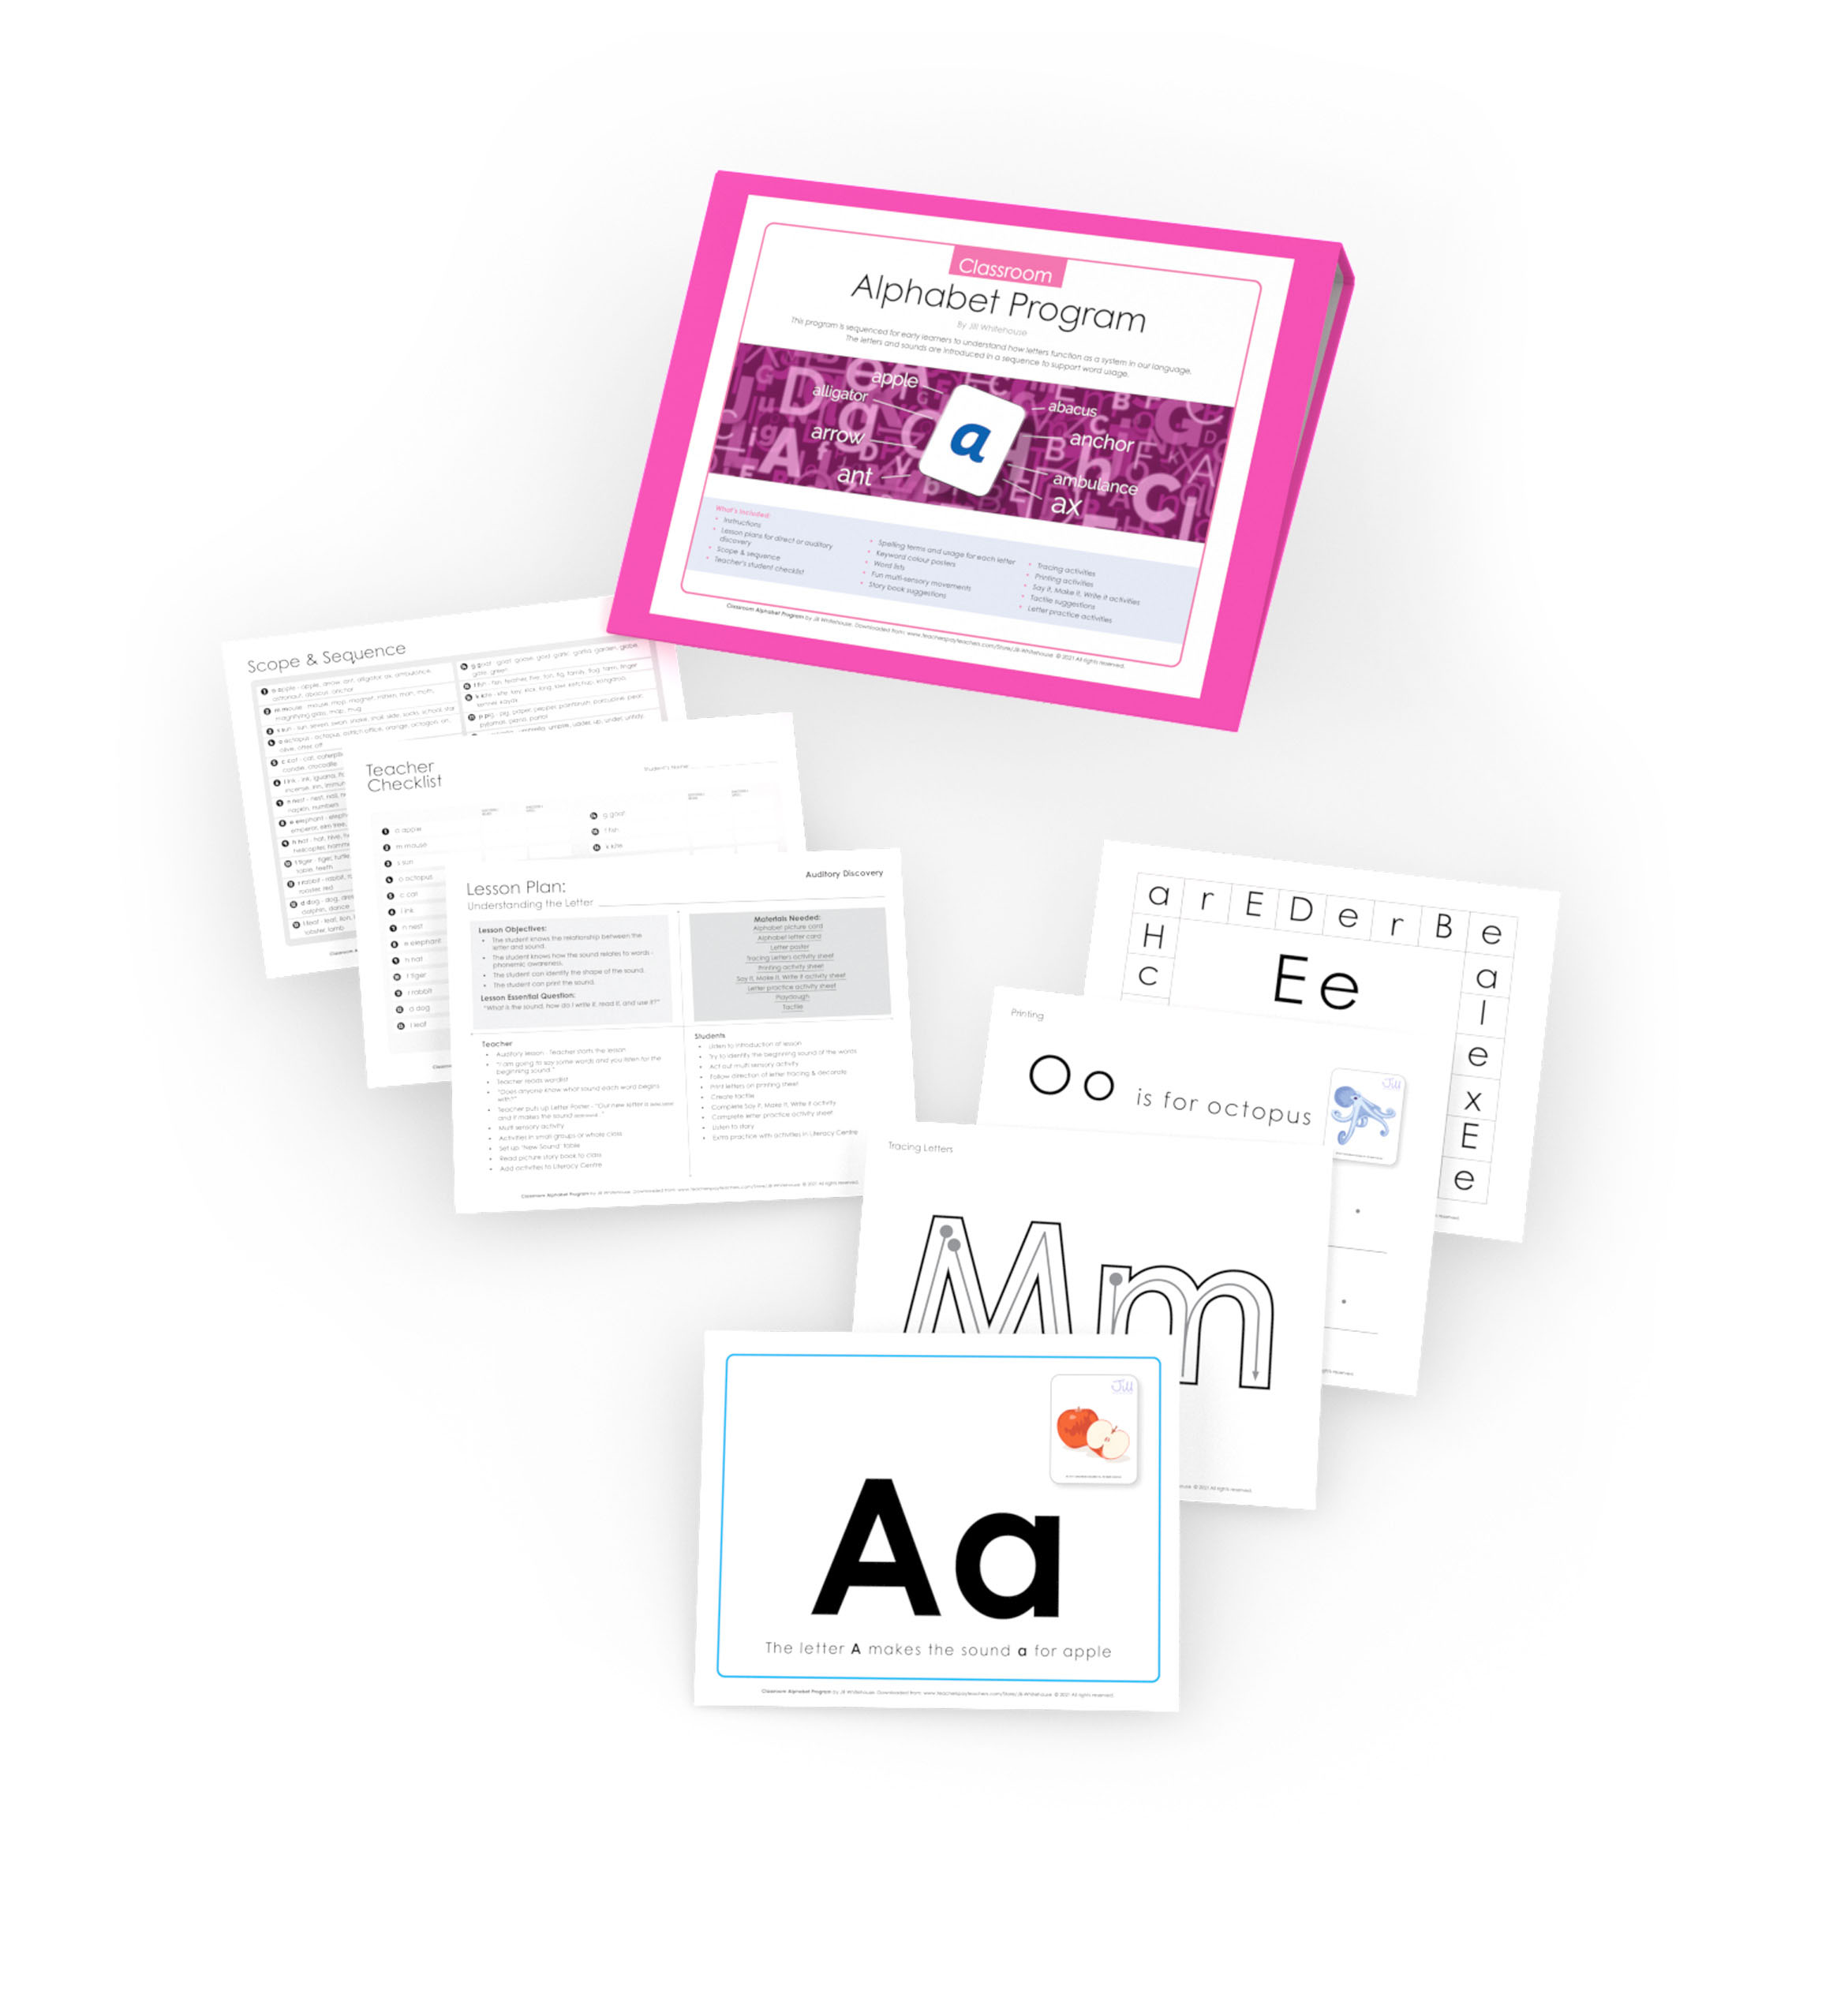 Alphabet program product image